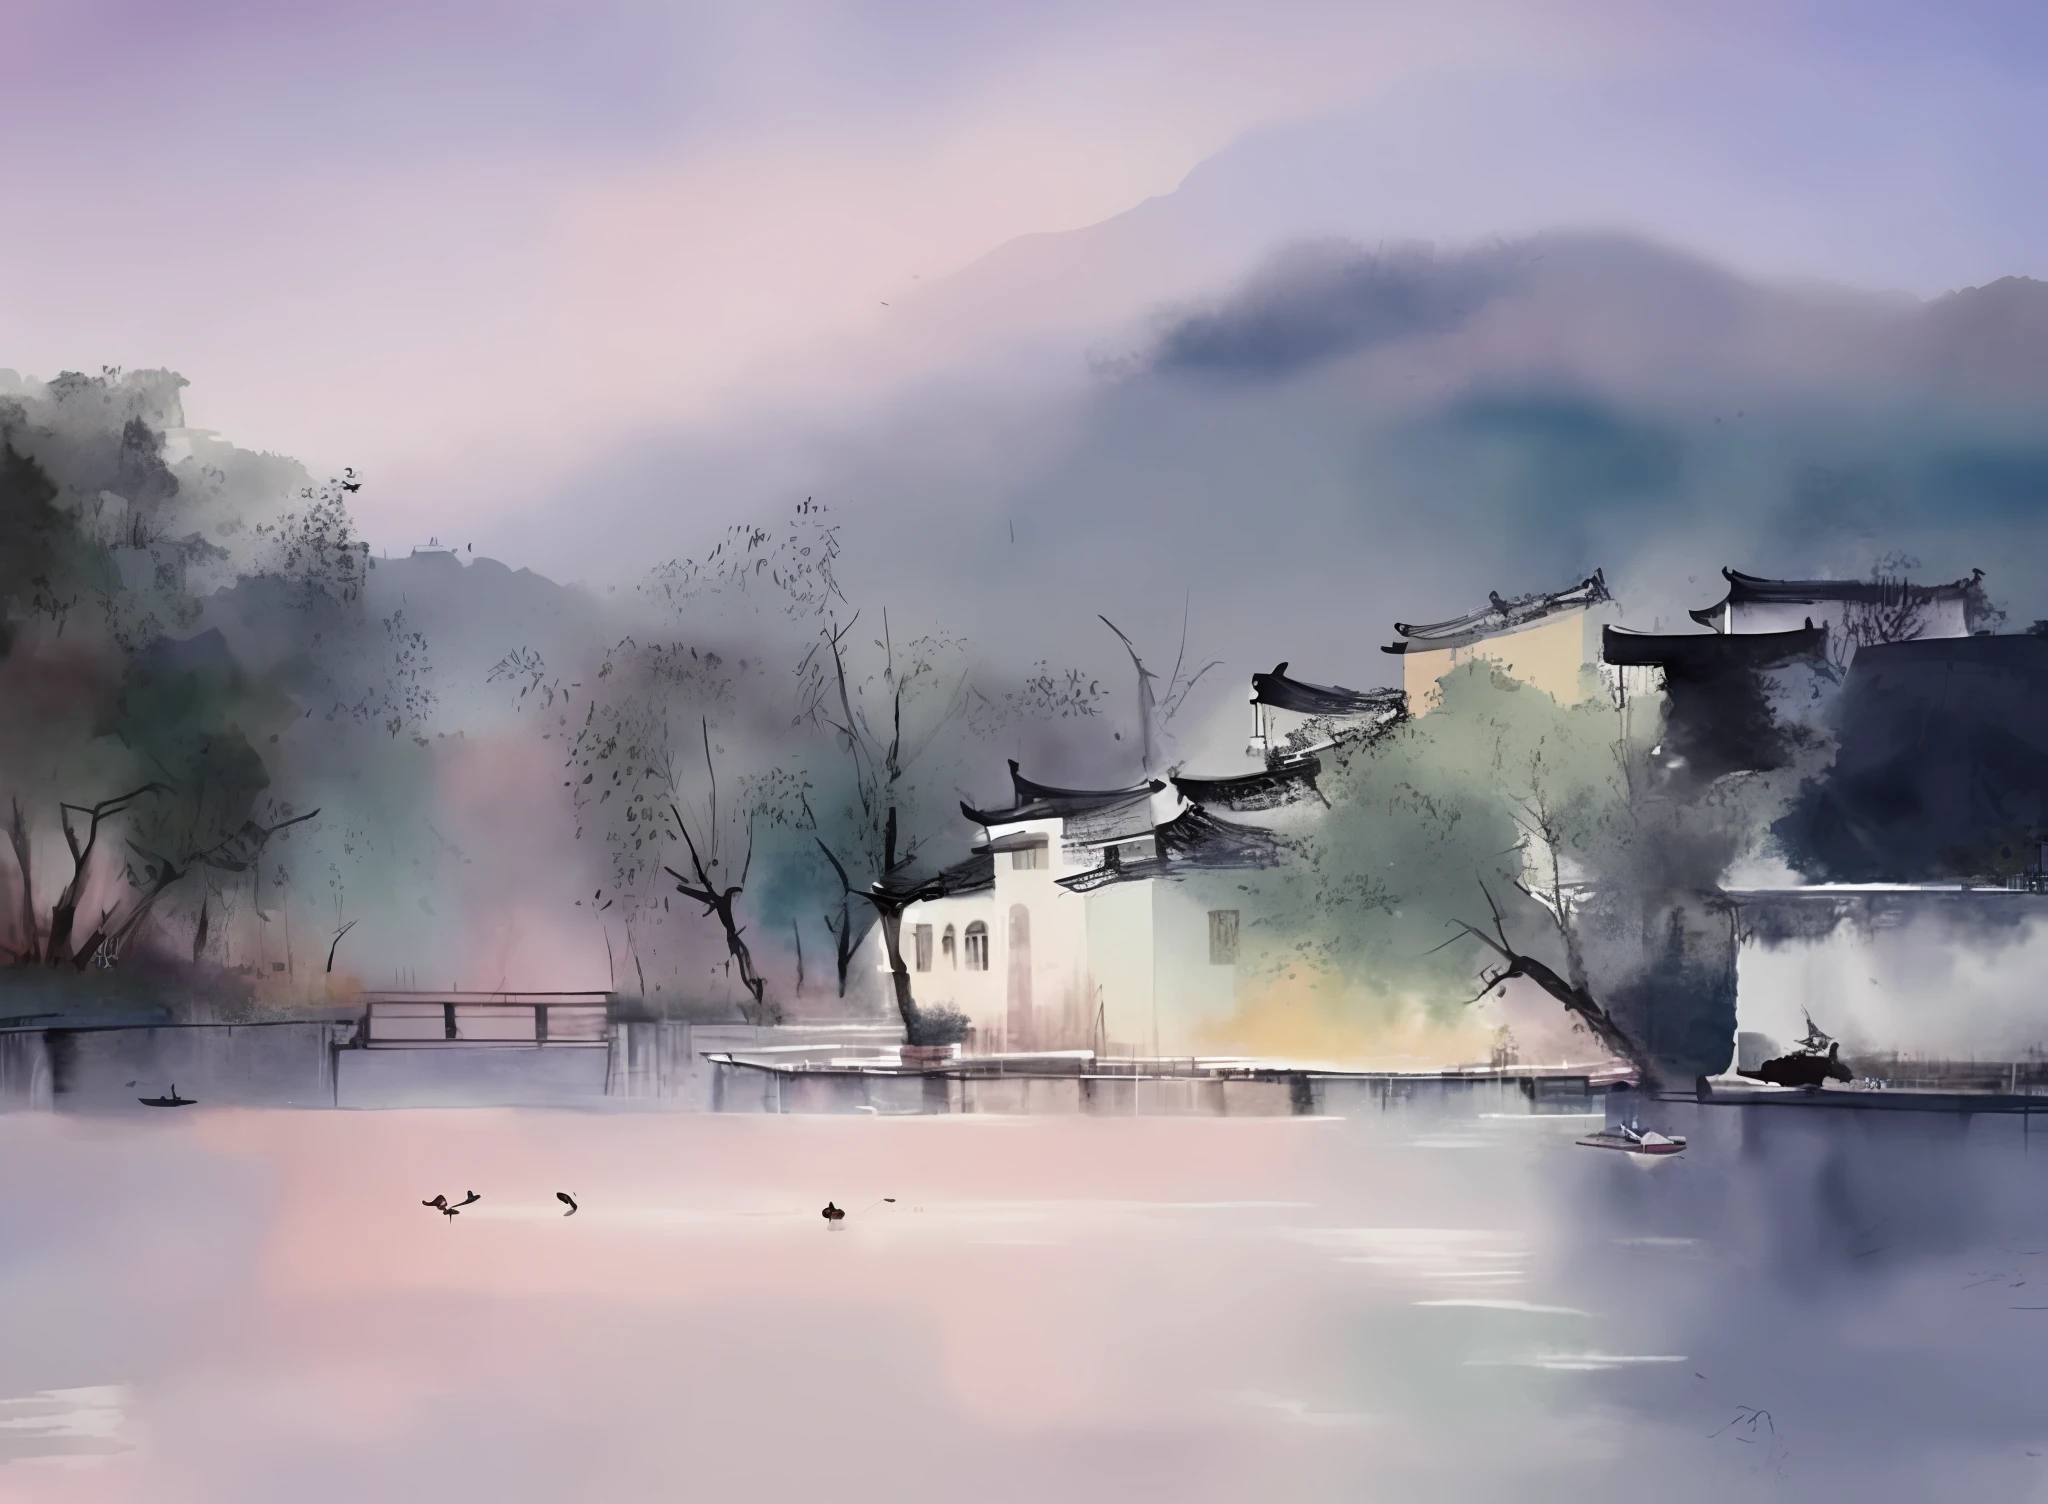 الرسم بالألوان المائية, الهندسة المعمارية جيانغنان, الريف, مياه البحيرة, البط, ضباب ضبابي, ألوان حالمة,